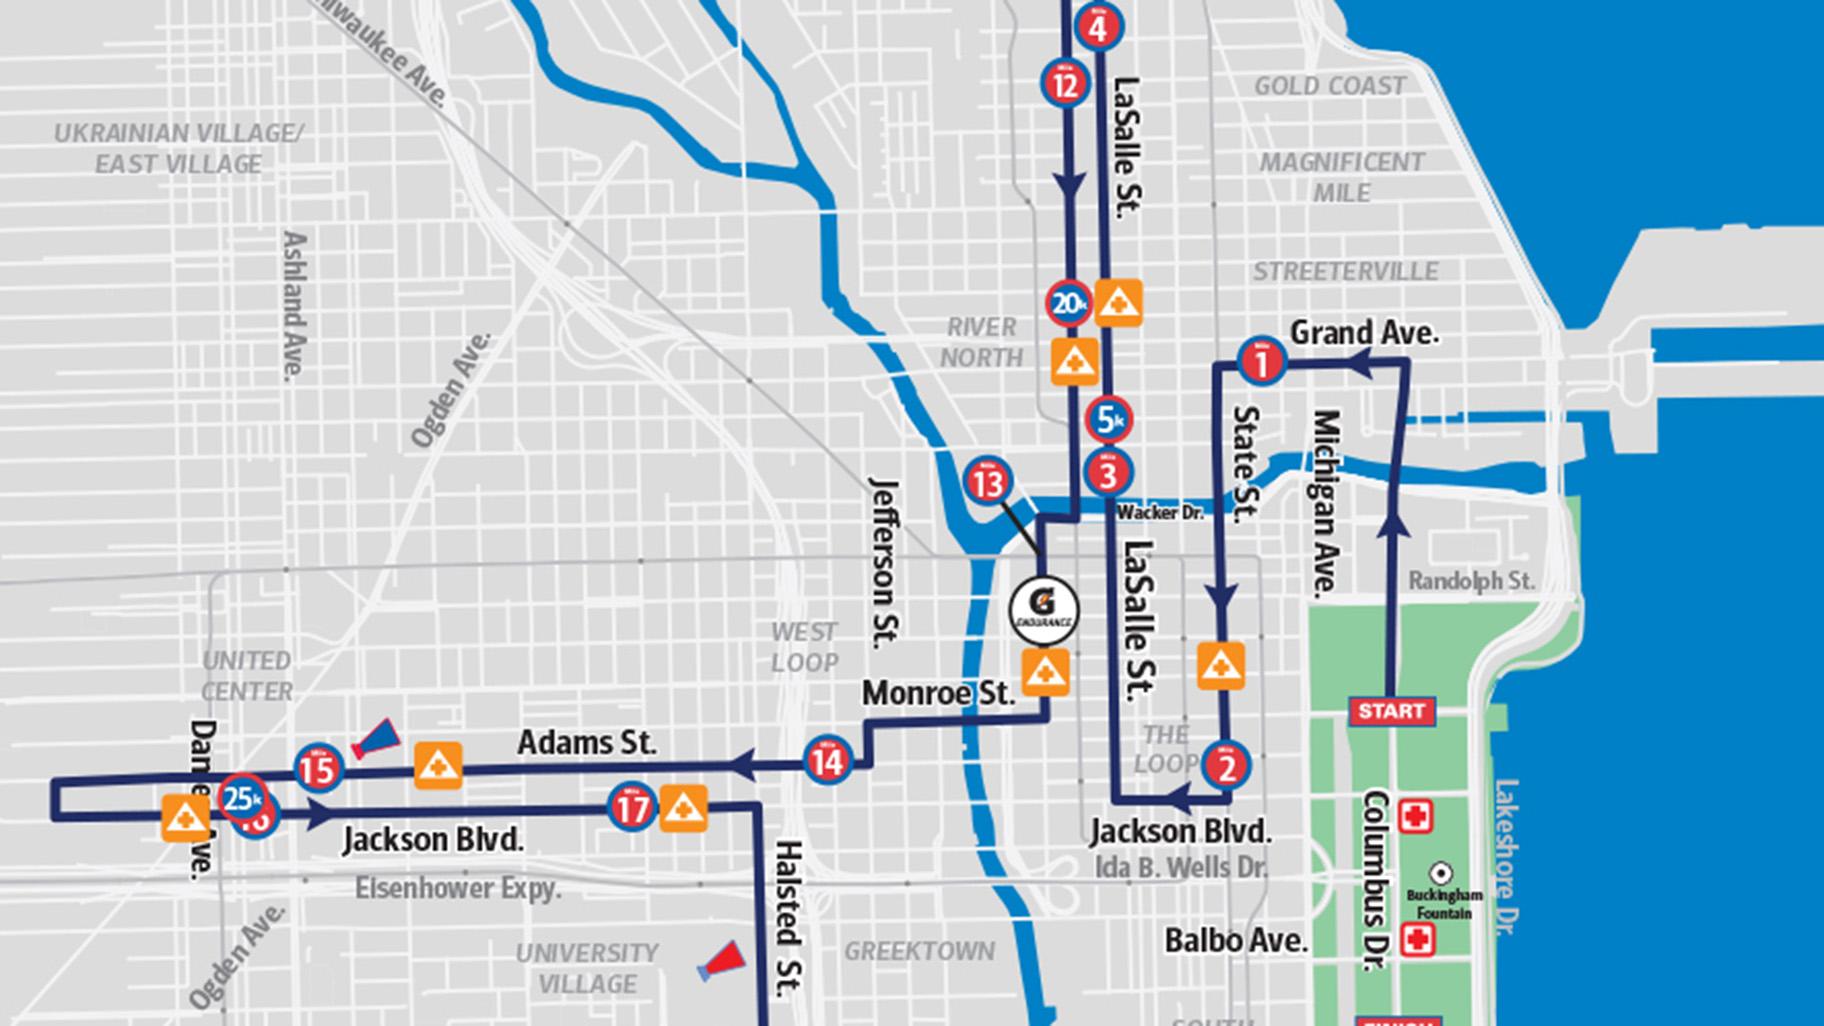 anchura Viaje Caso Wardian chicago marathon route map exposición